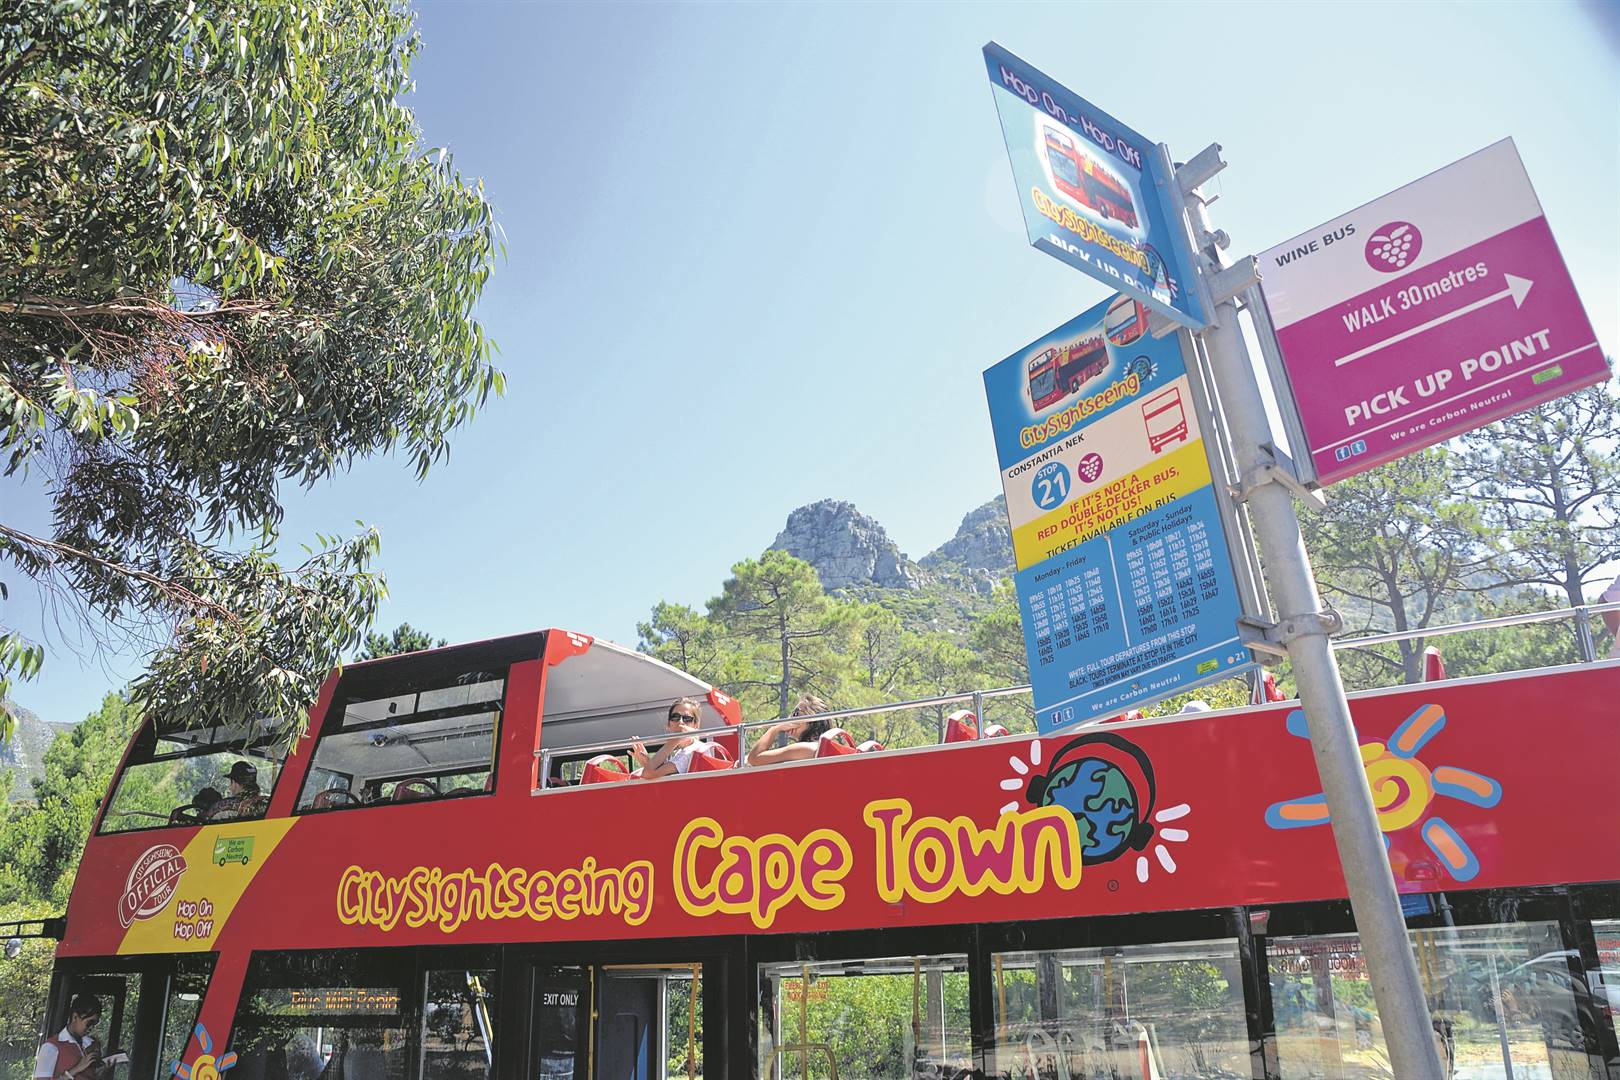 City Sightseeing Cape Town se rooi bus ry op verskillende roetes insluitende ’n wynroete in die Boland &#233;n die Constantia-omgewing.  Foto: Ilse Zietsman